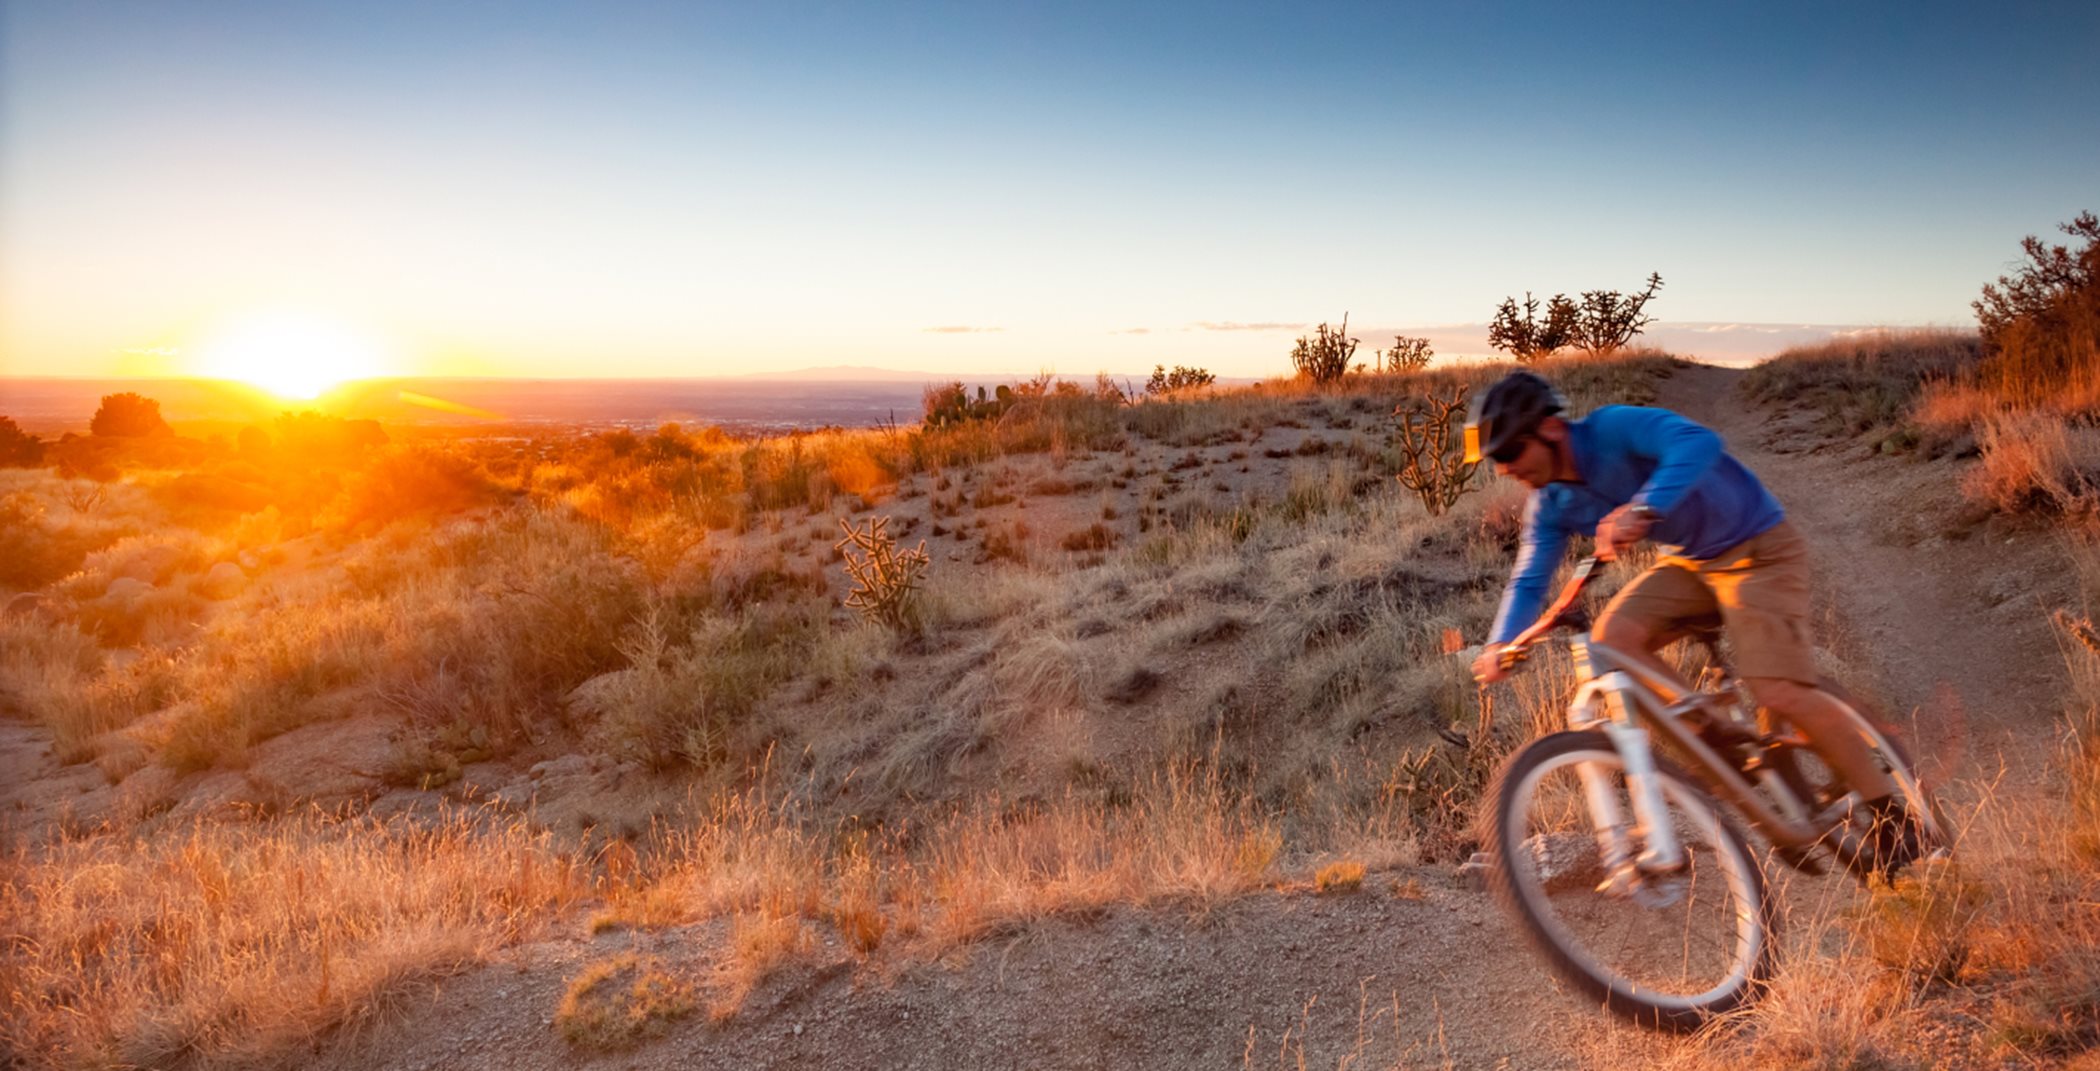 Desert mountain biking at sunset